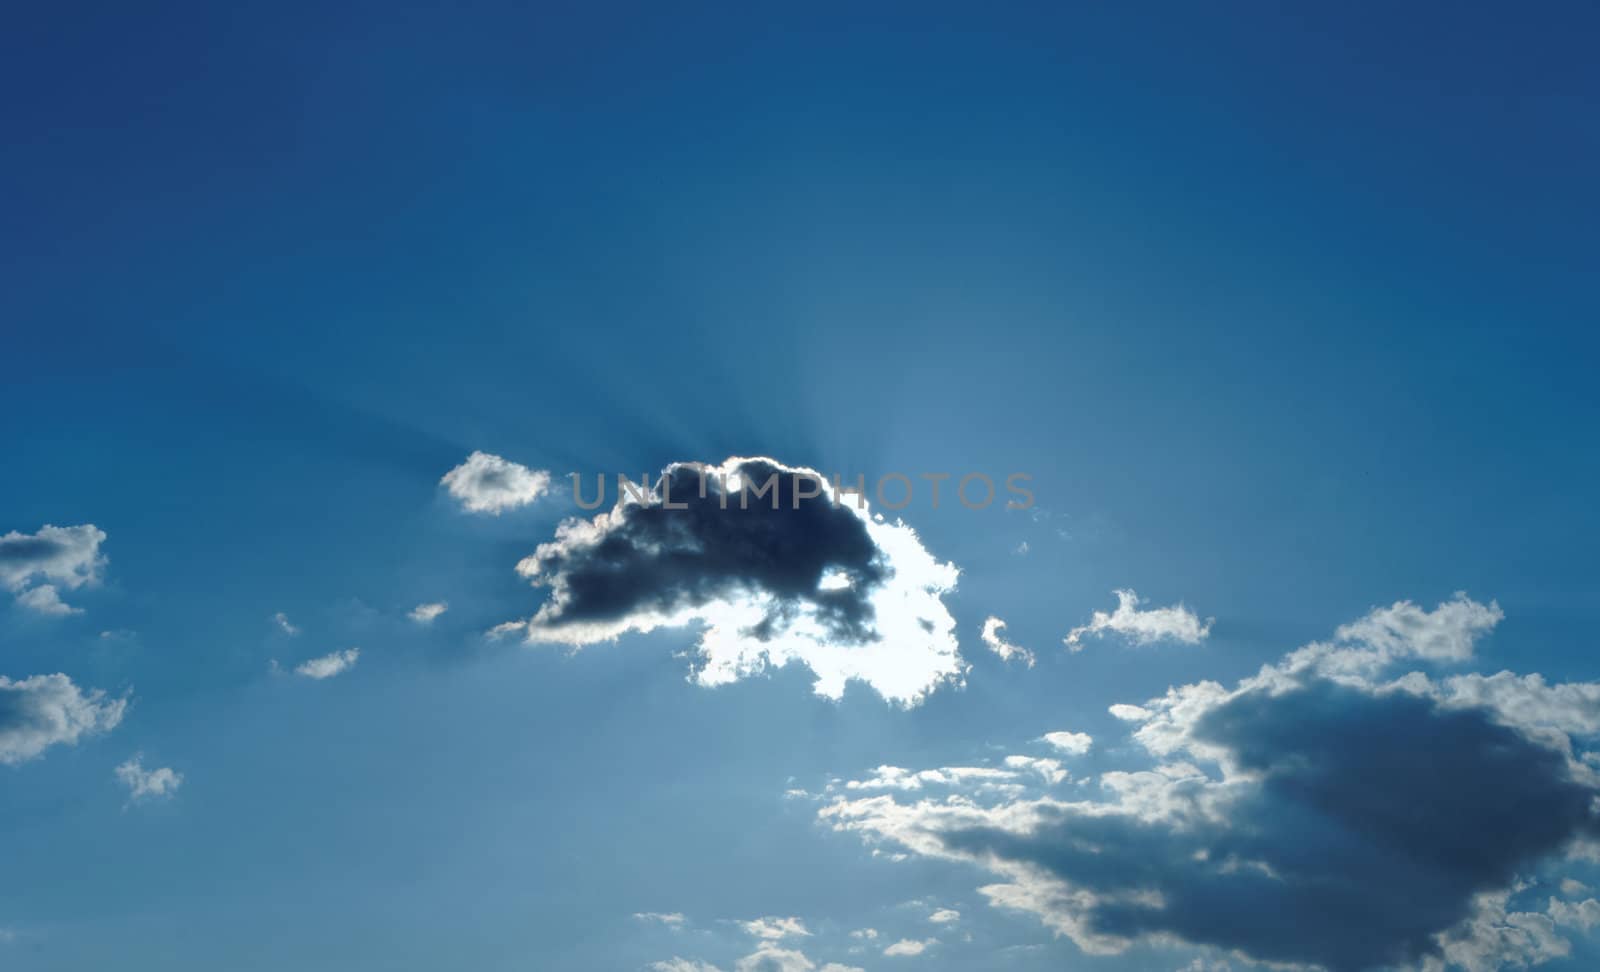 clouds in sunlight by NagyDodo